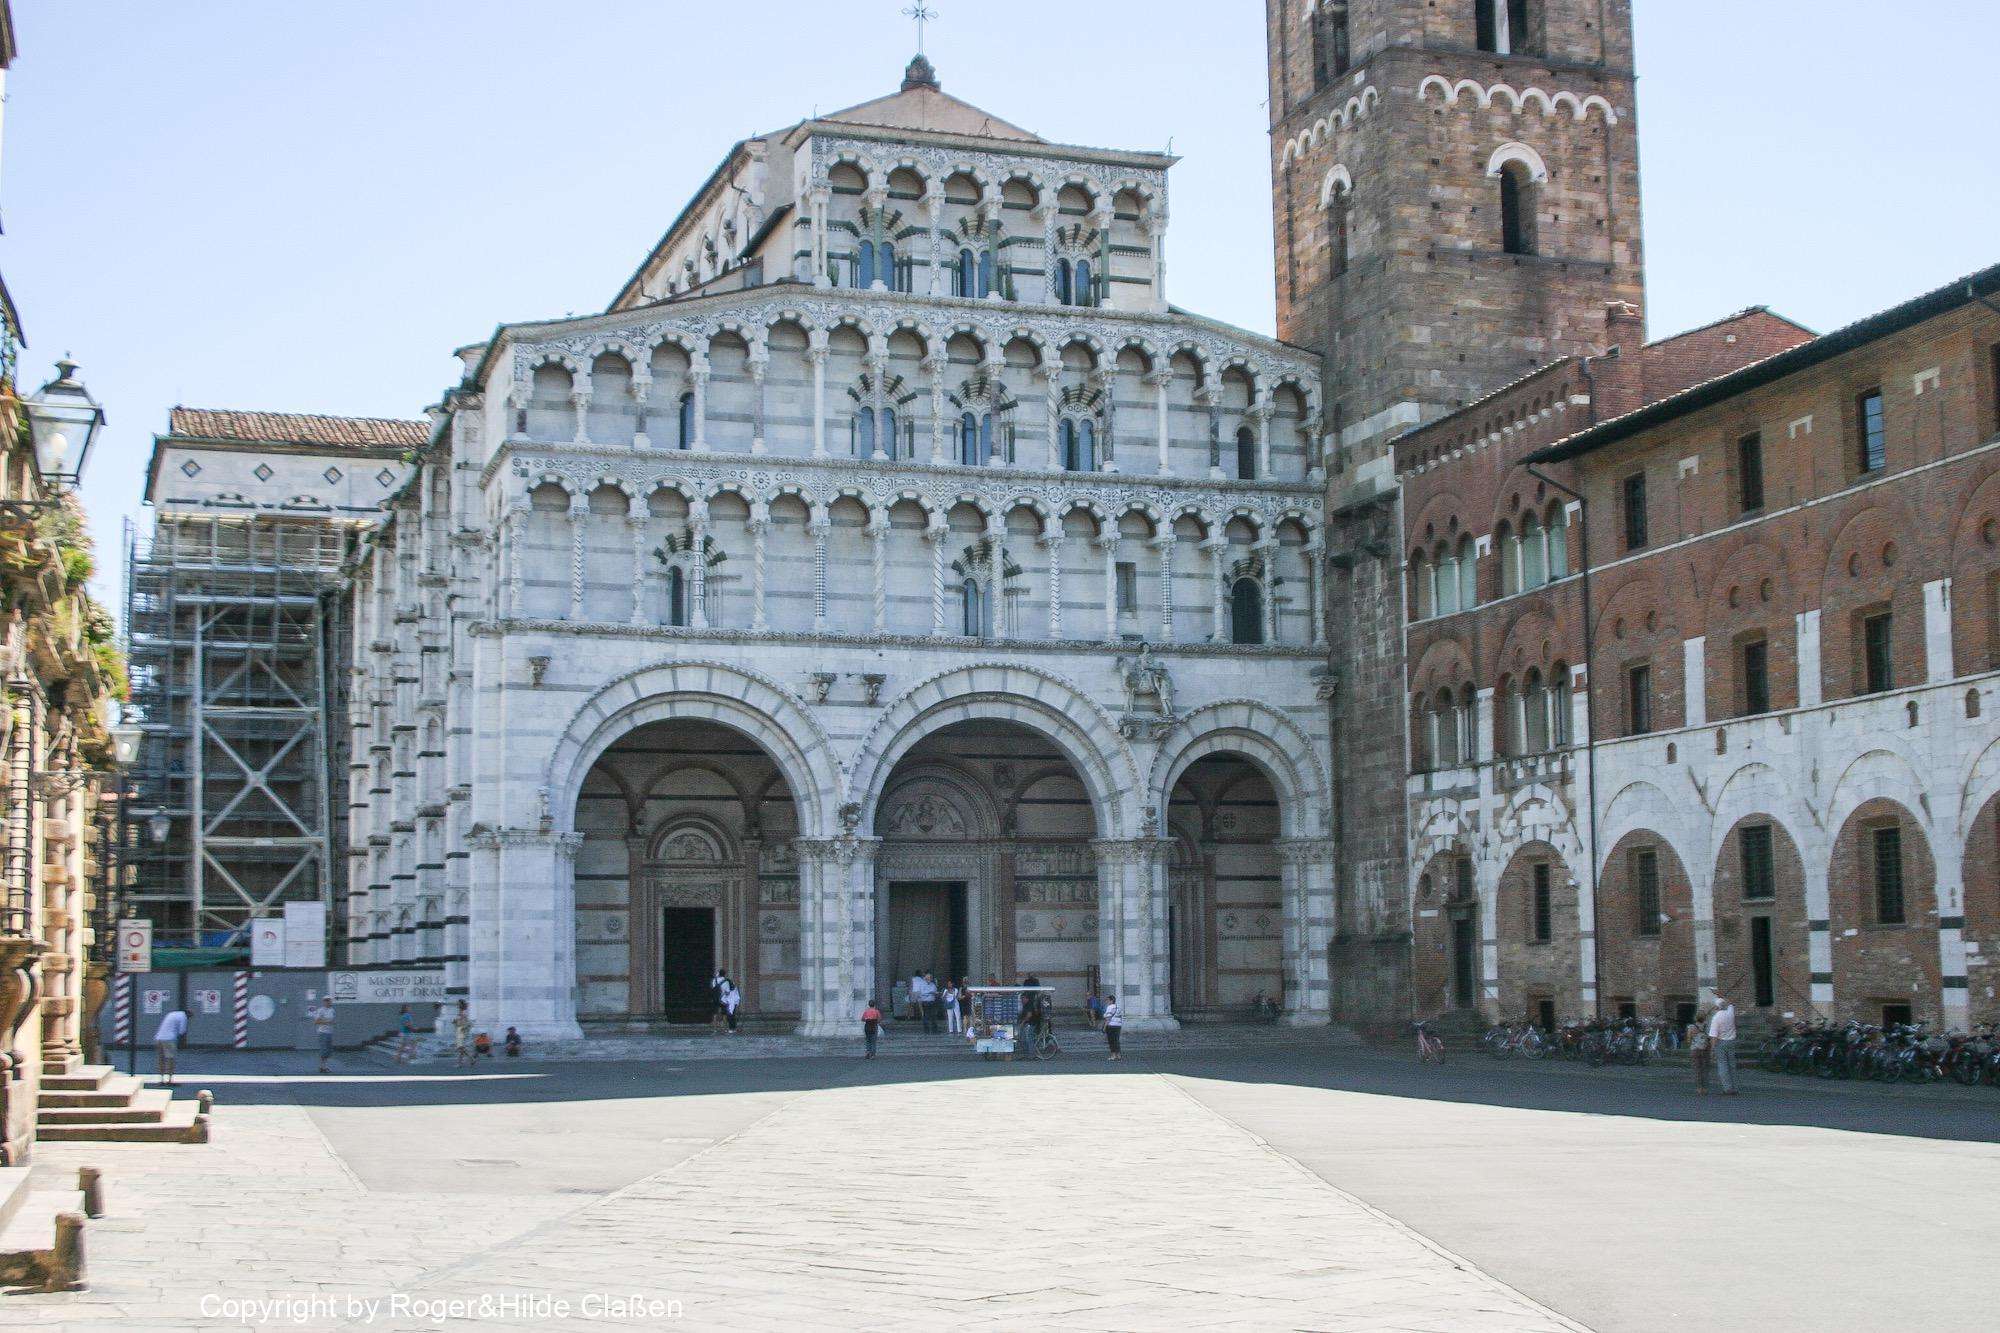 Die Kathedrale San Martino in Lucca. Diese Kathedrale wurde am Ende des 12. Jahrhunderts erbaut. (1196–1204) und ist heute noch die Kathedrale des Erzbistums Lucca. Der Besucher findet sie in der Nähe der südlichen Stadtmauer (Domplatz)